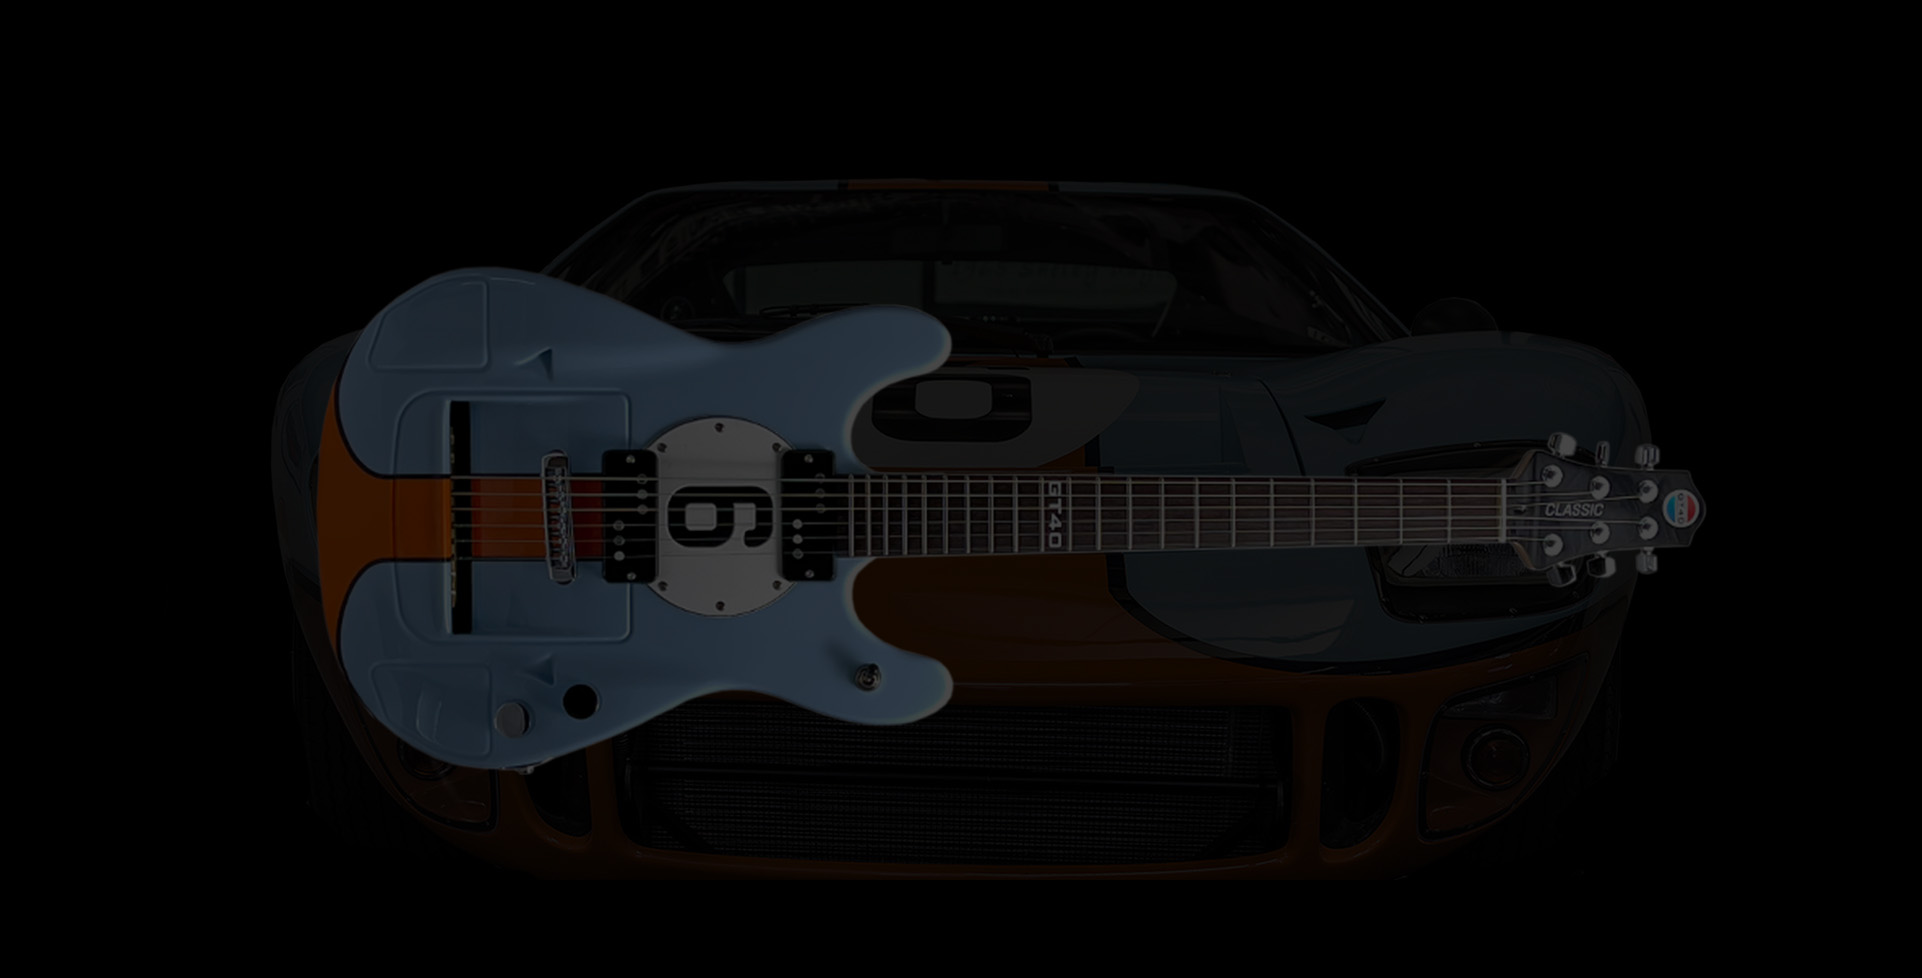 Official GT40 guitars